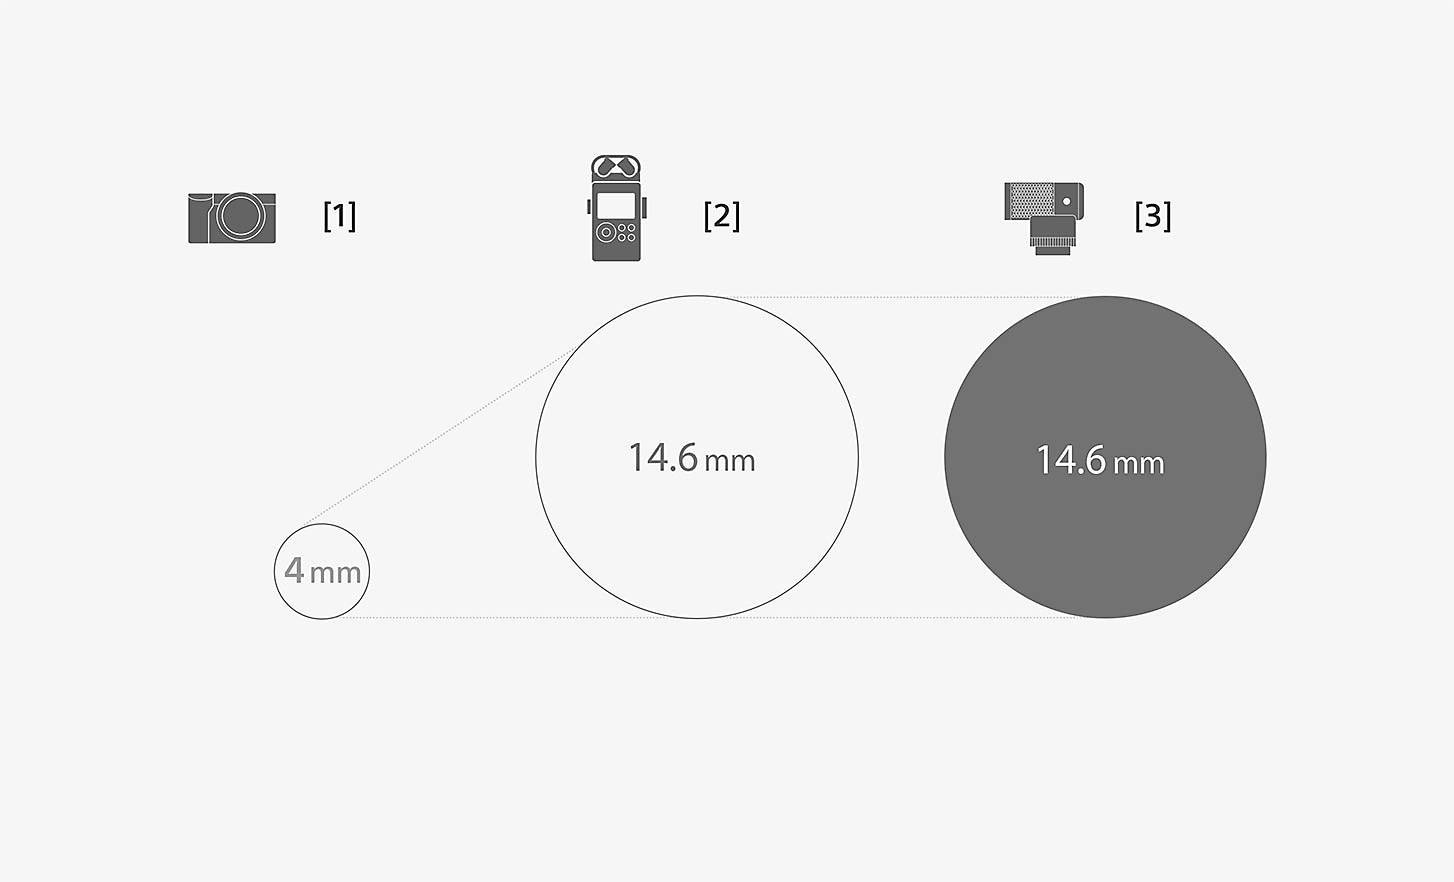 Ilustrasi yang membandingkan dimensi kapsul mikrofon ECM-G1 dan mikrofon internal